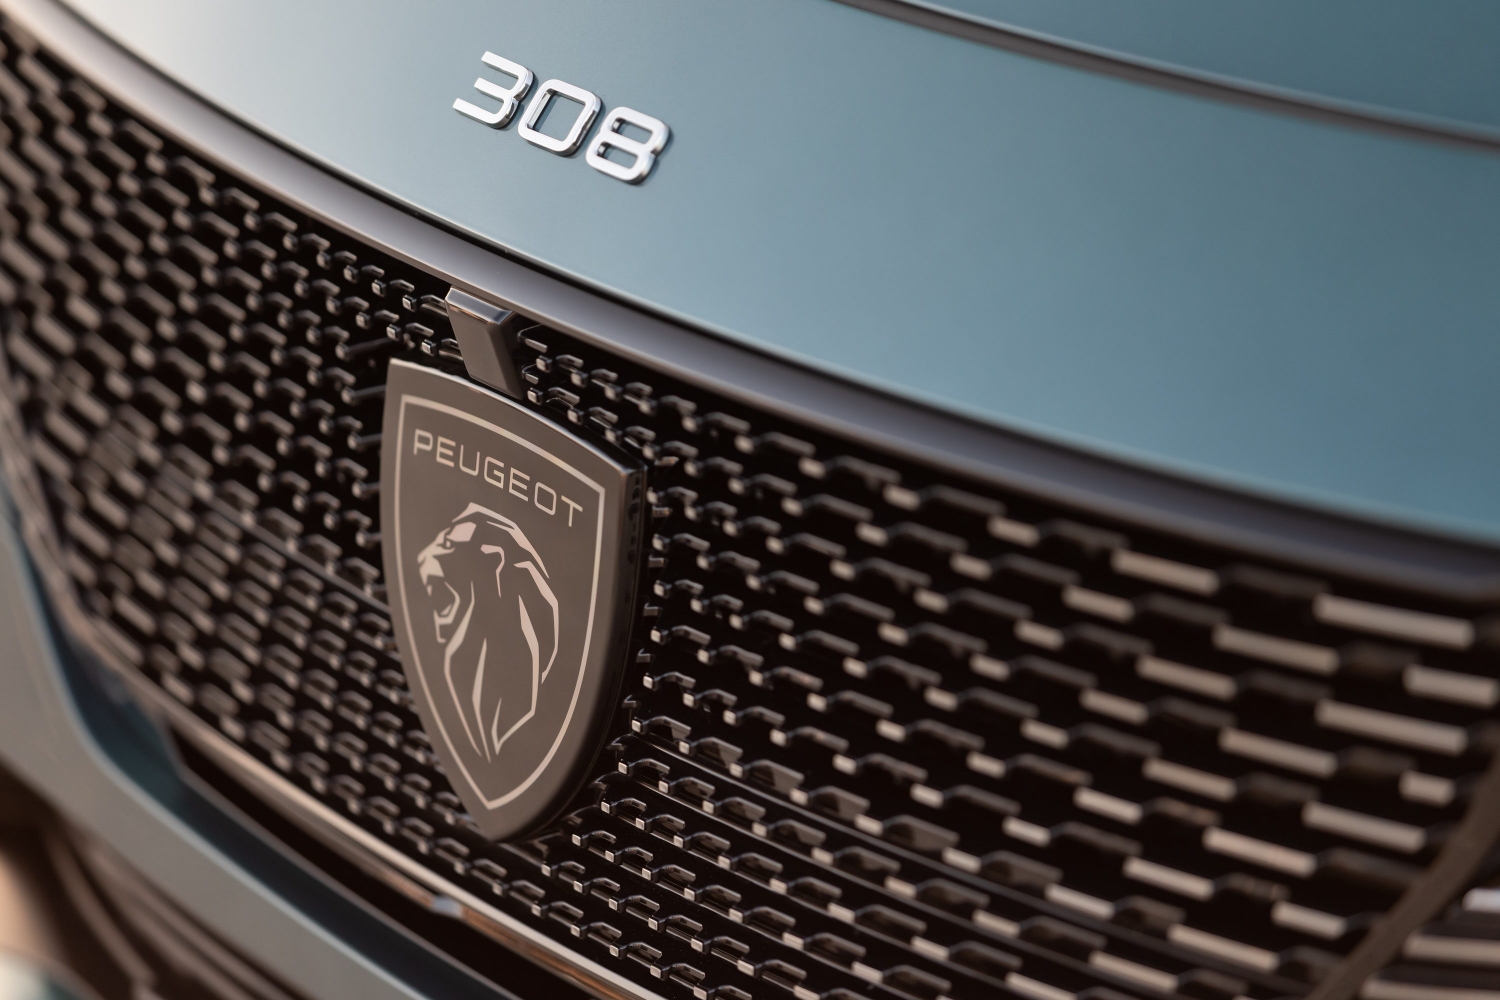 New Peugeot emblem hides some high-tech secrets